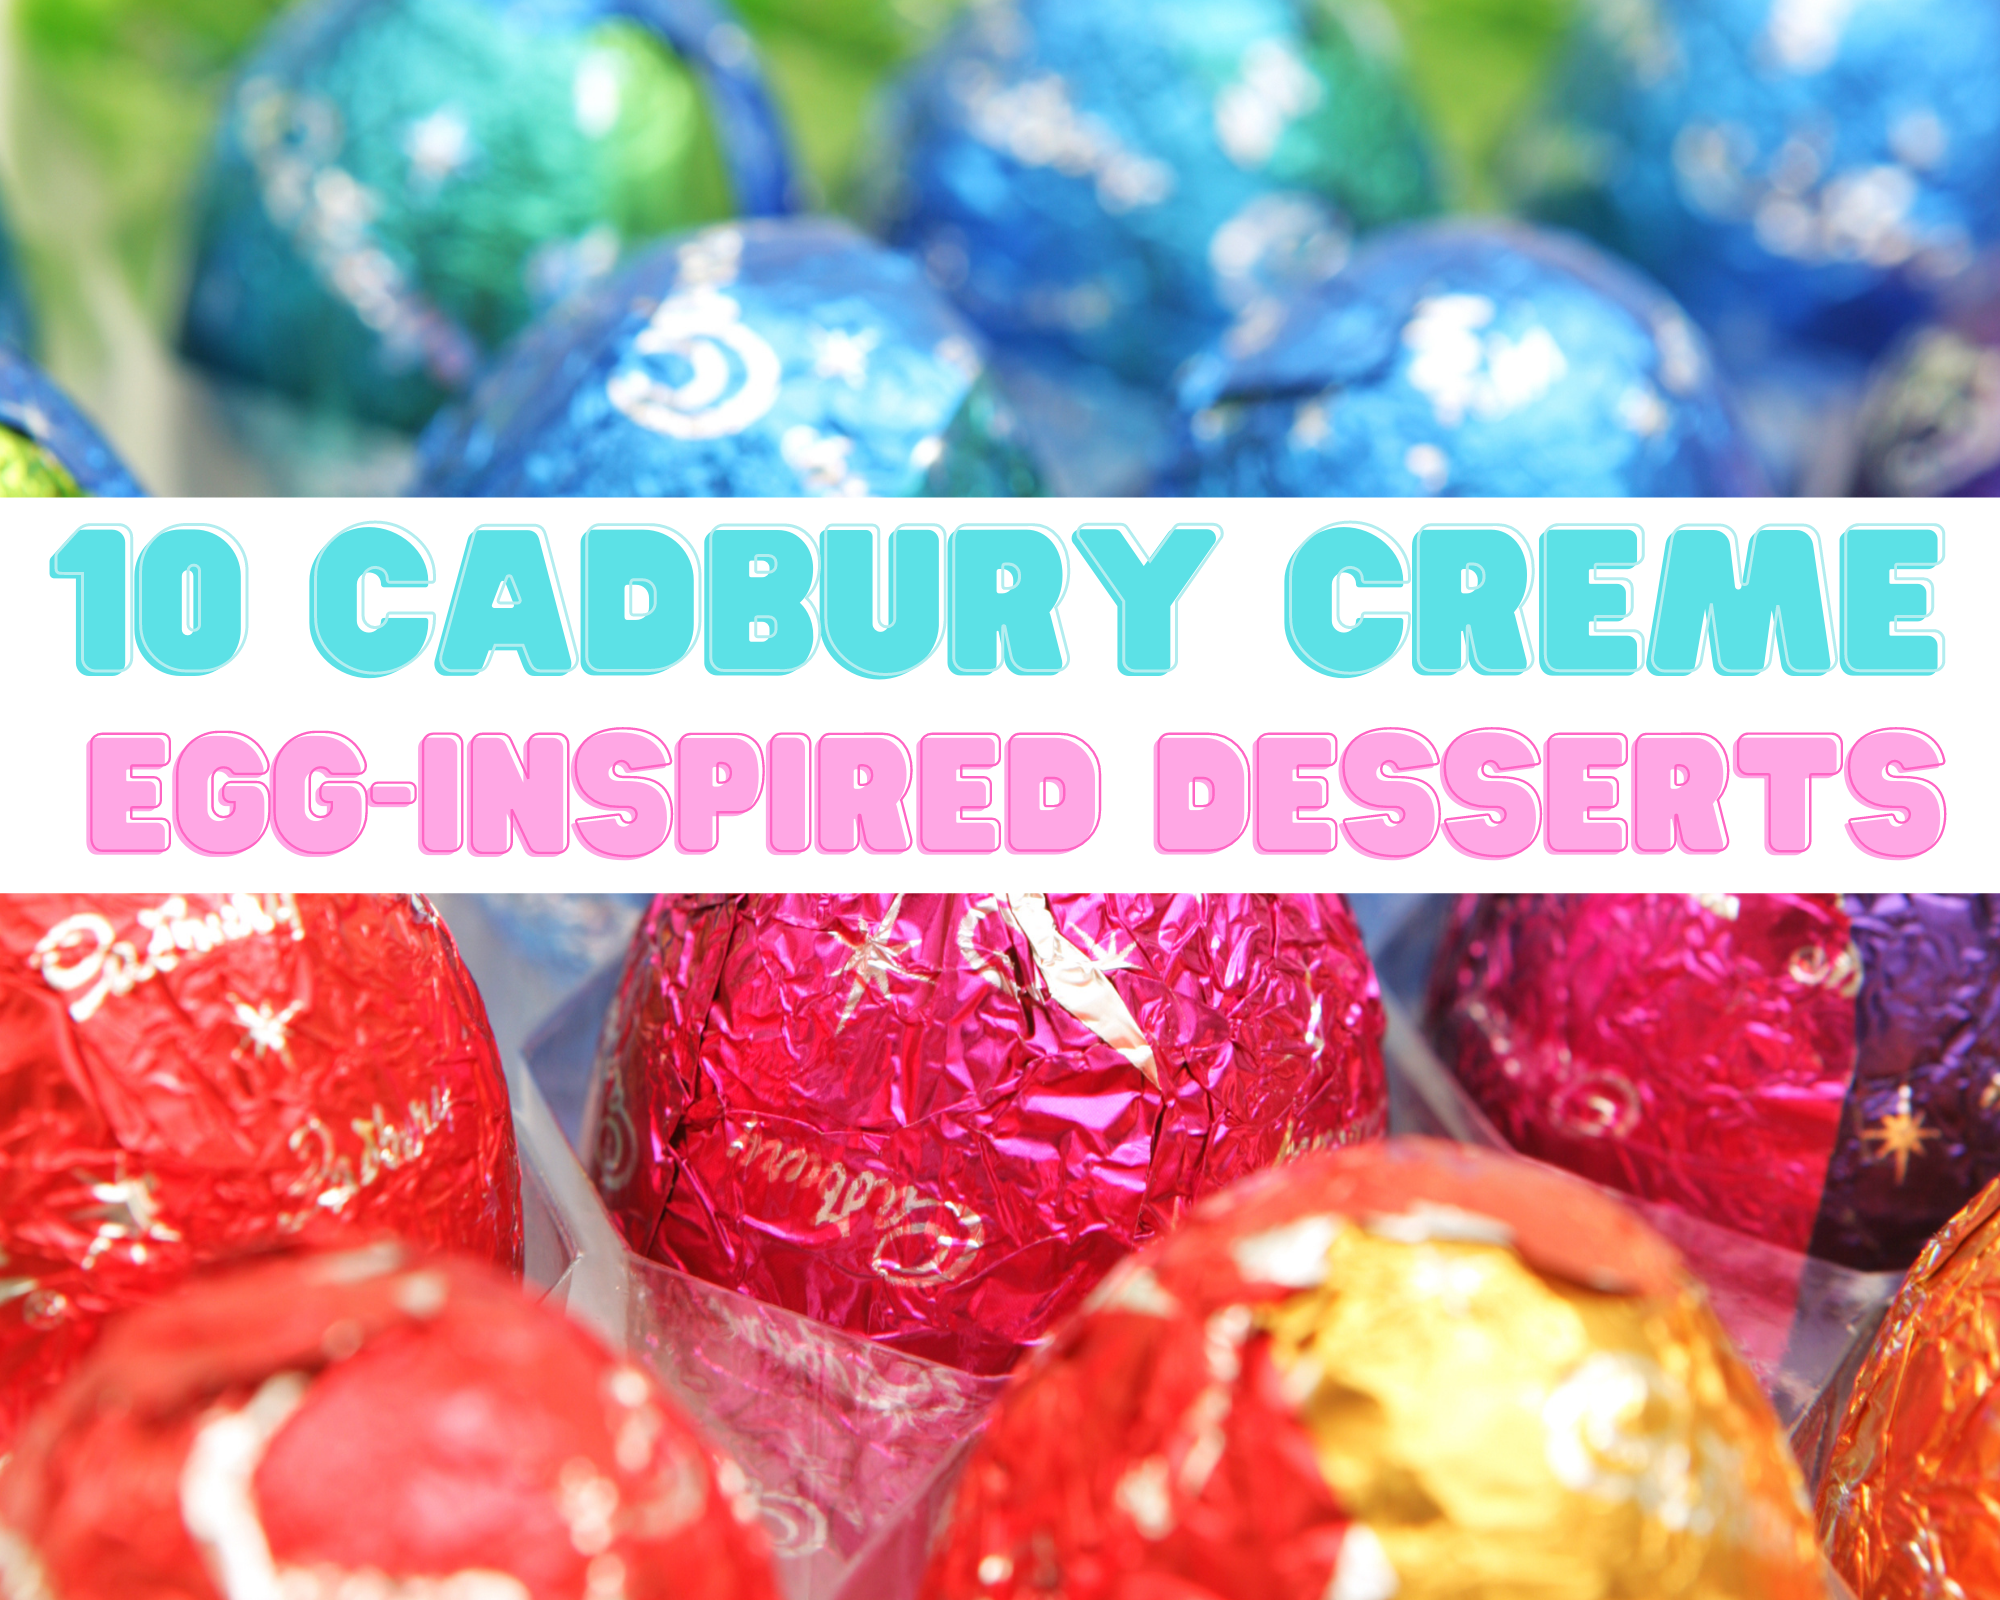 Cadbury creme egg recipes